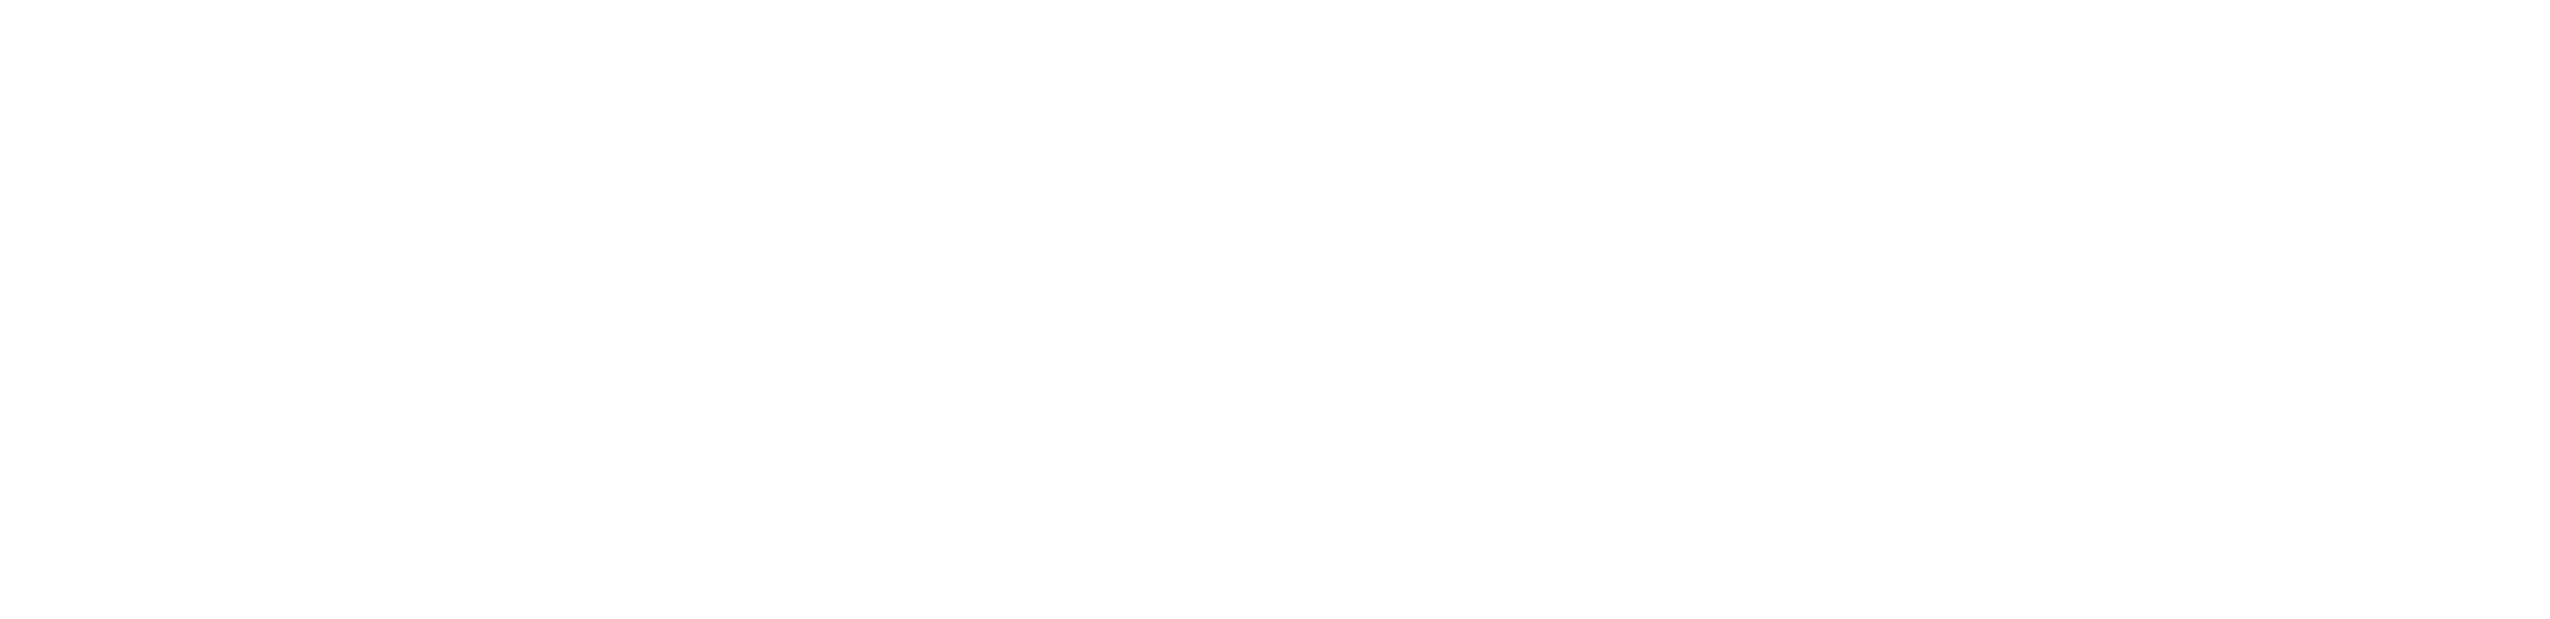 Vuokatinranta-logo-2019-valk